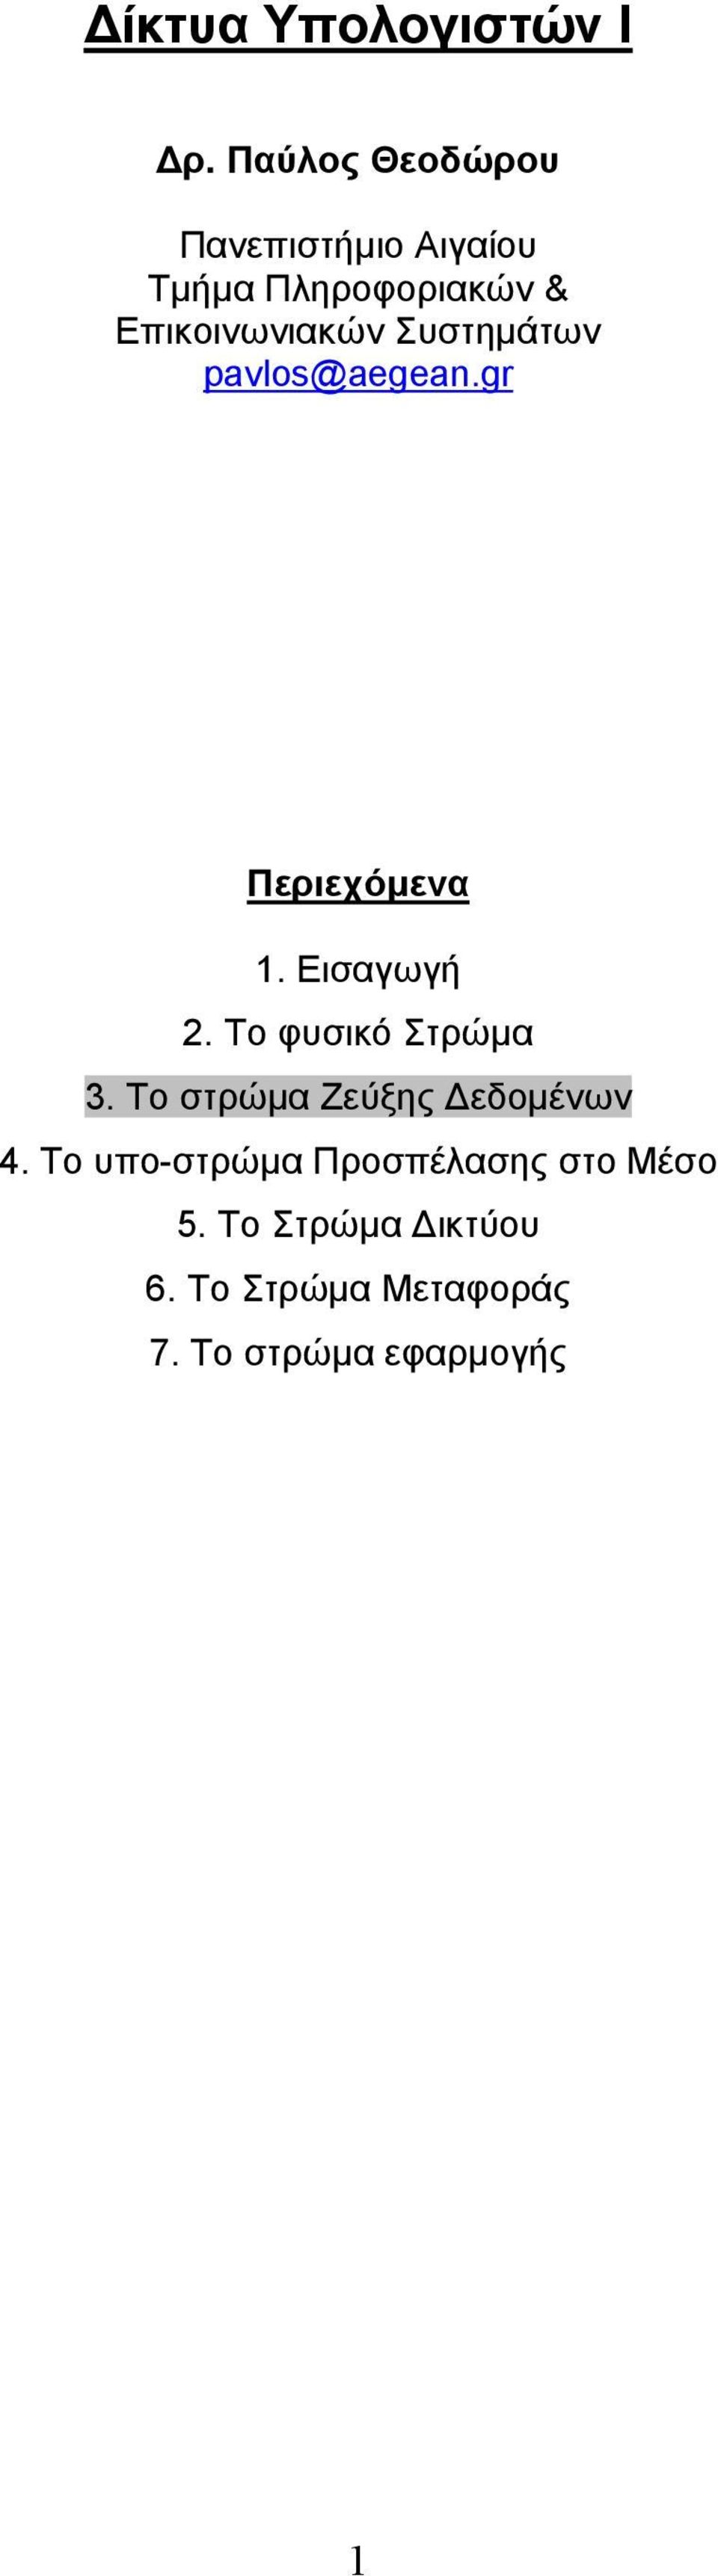 Συστηµάτων pavlos@aegean.gr Περιεχόµενα 1. Εισαγωγή 2. Το φυσικό Στρώµα 3.